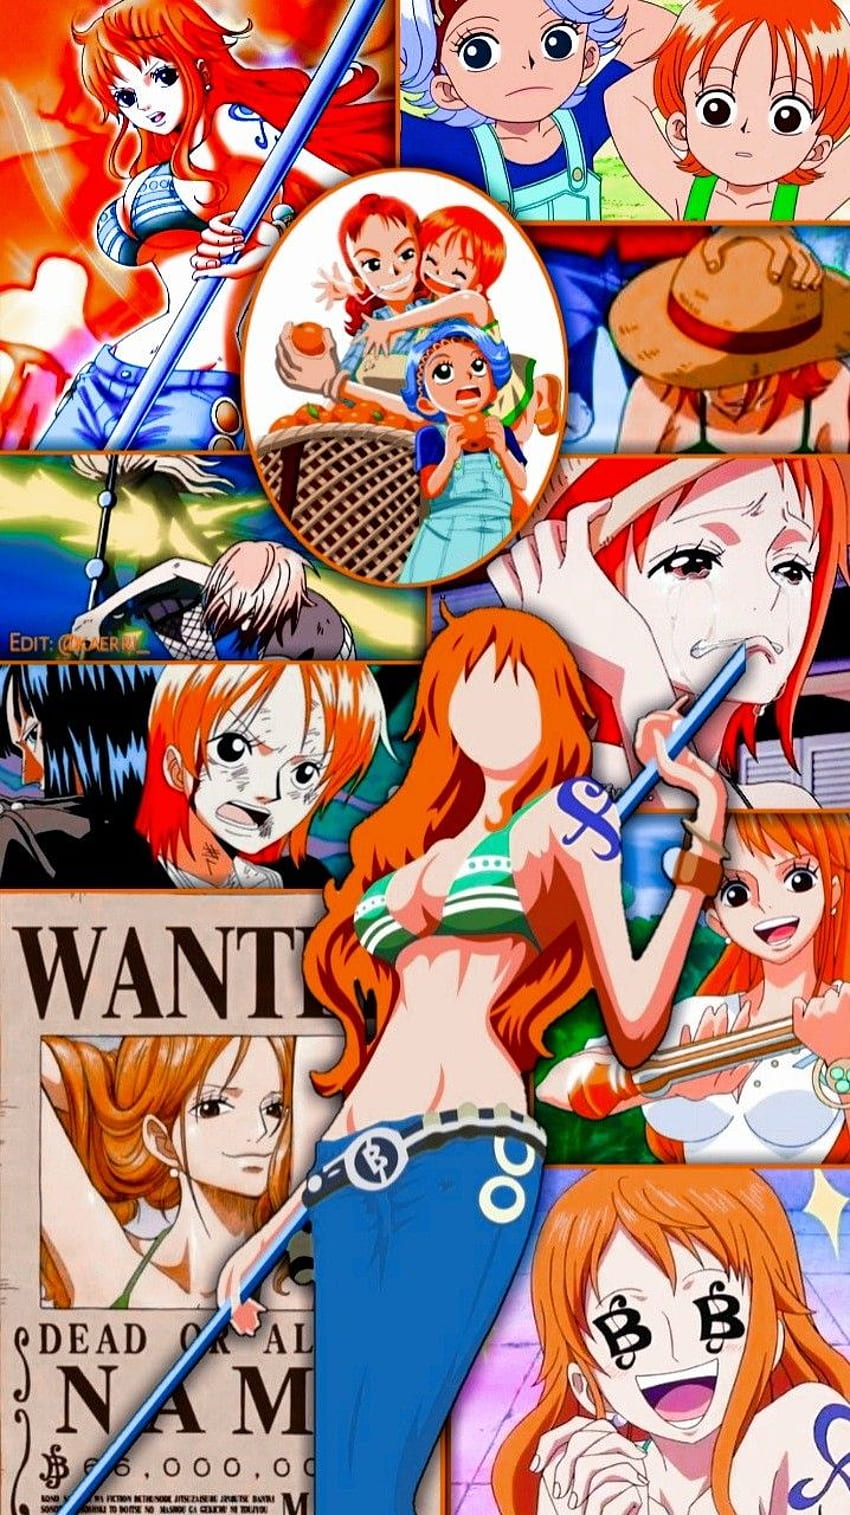 Download One Piece (1920x1080)  One piece nami, One piece, Manga anime one  piece